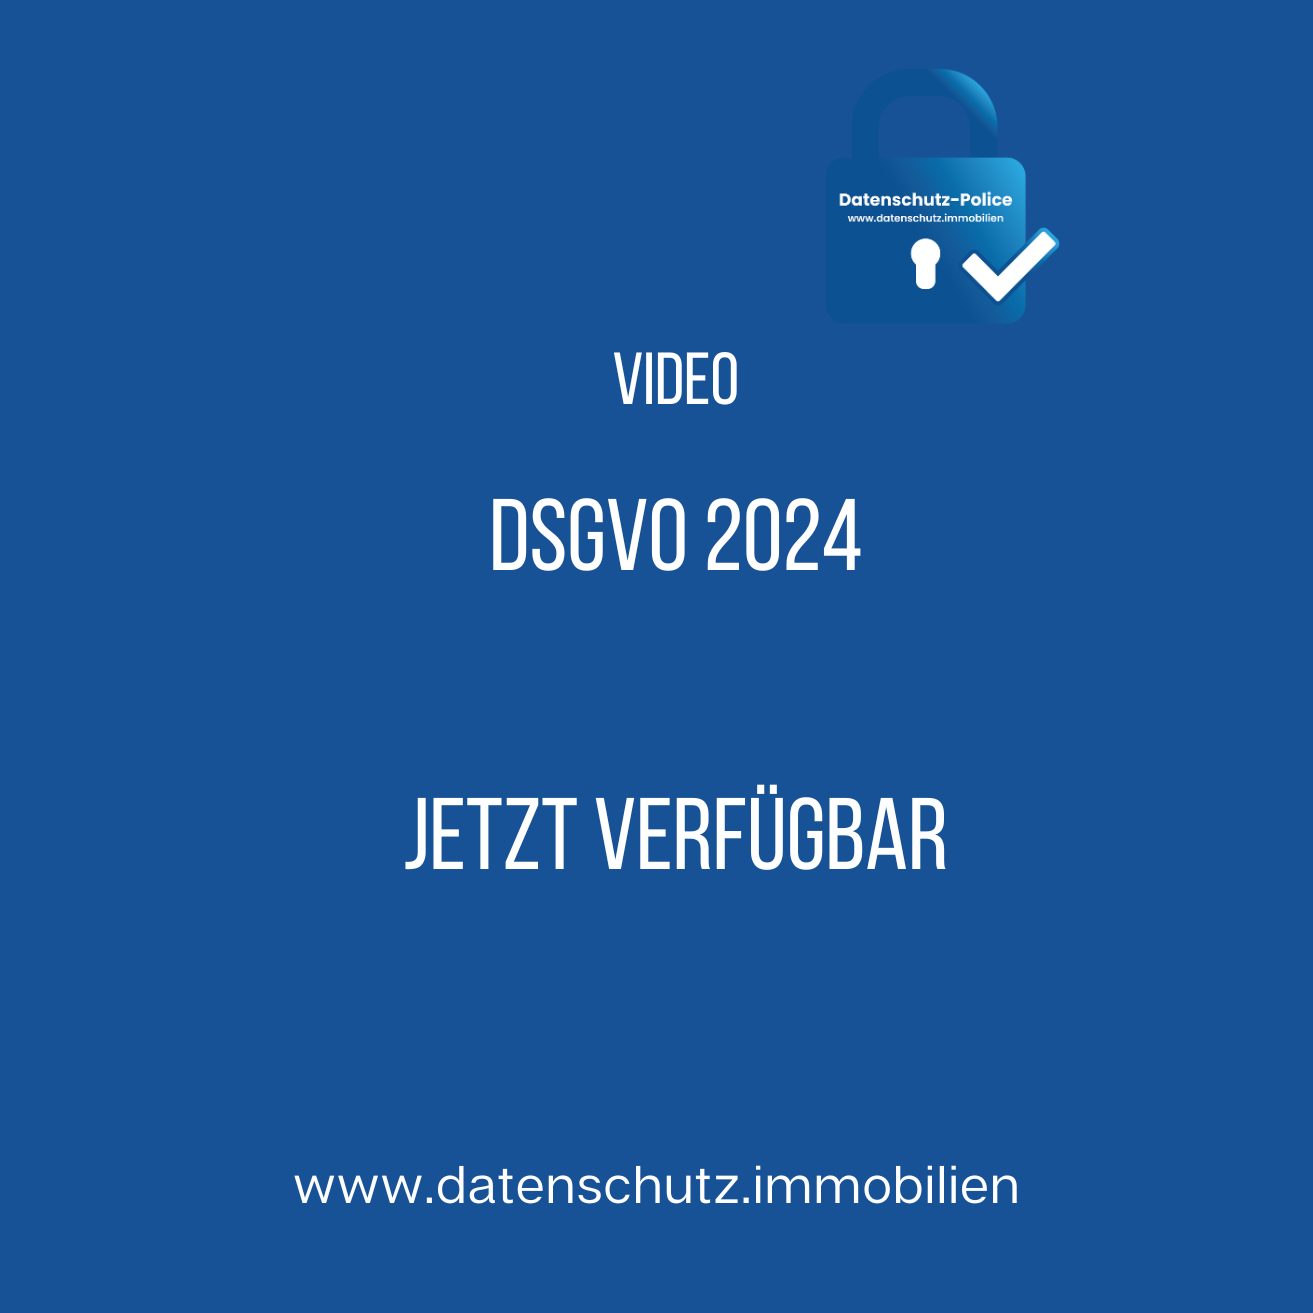 DSGVO 2024